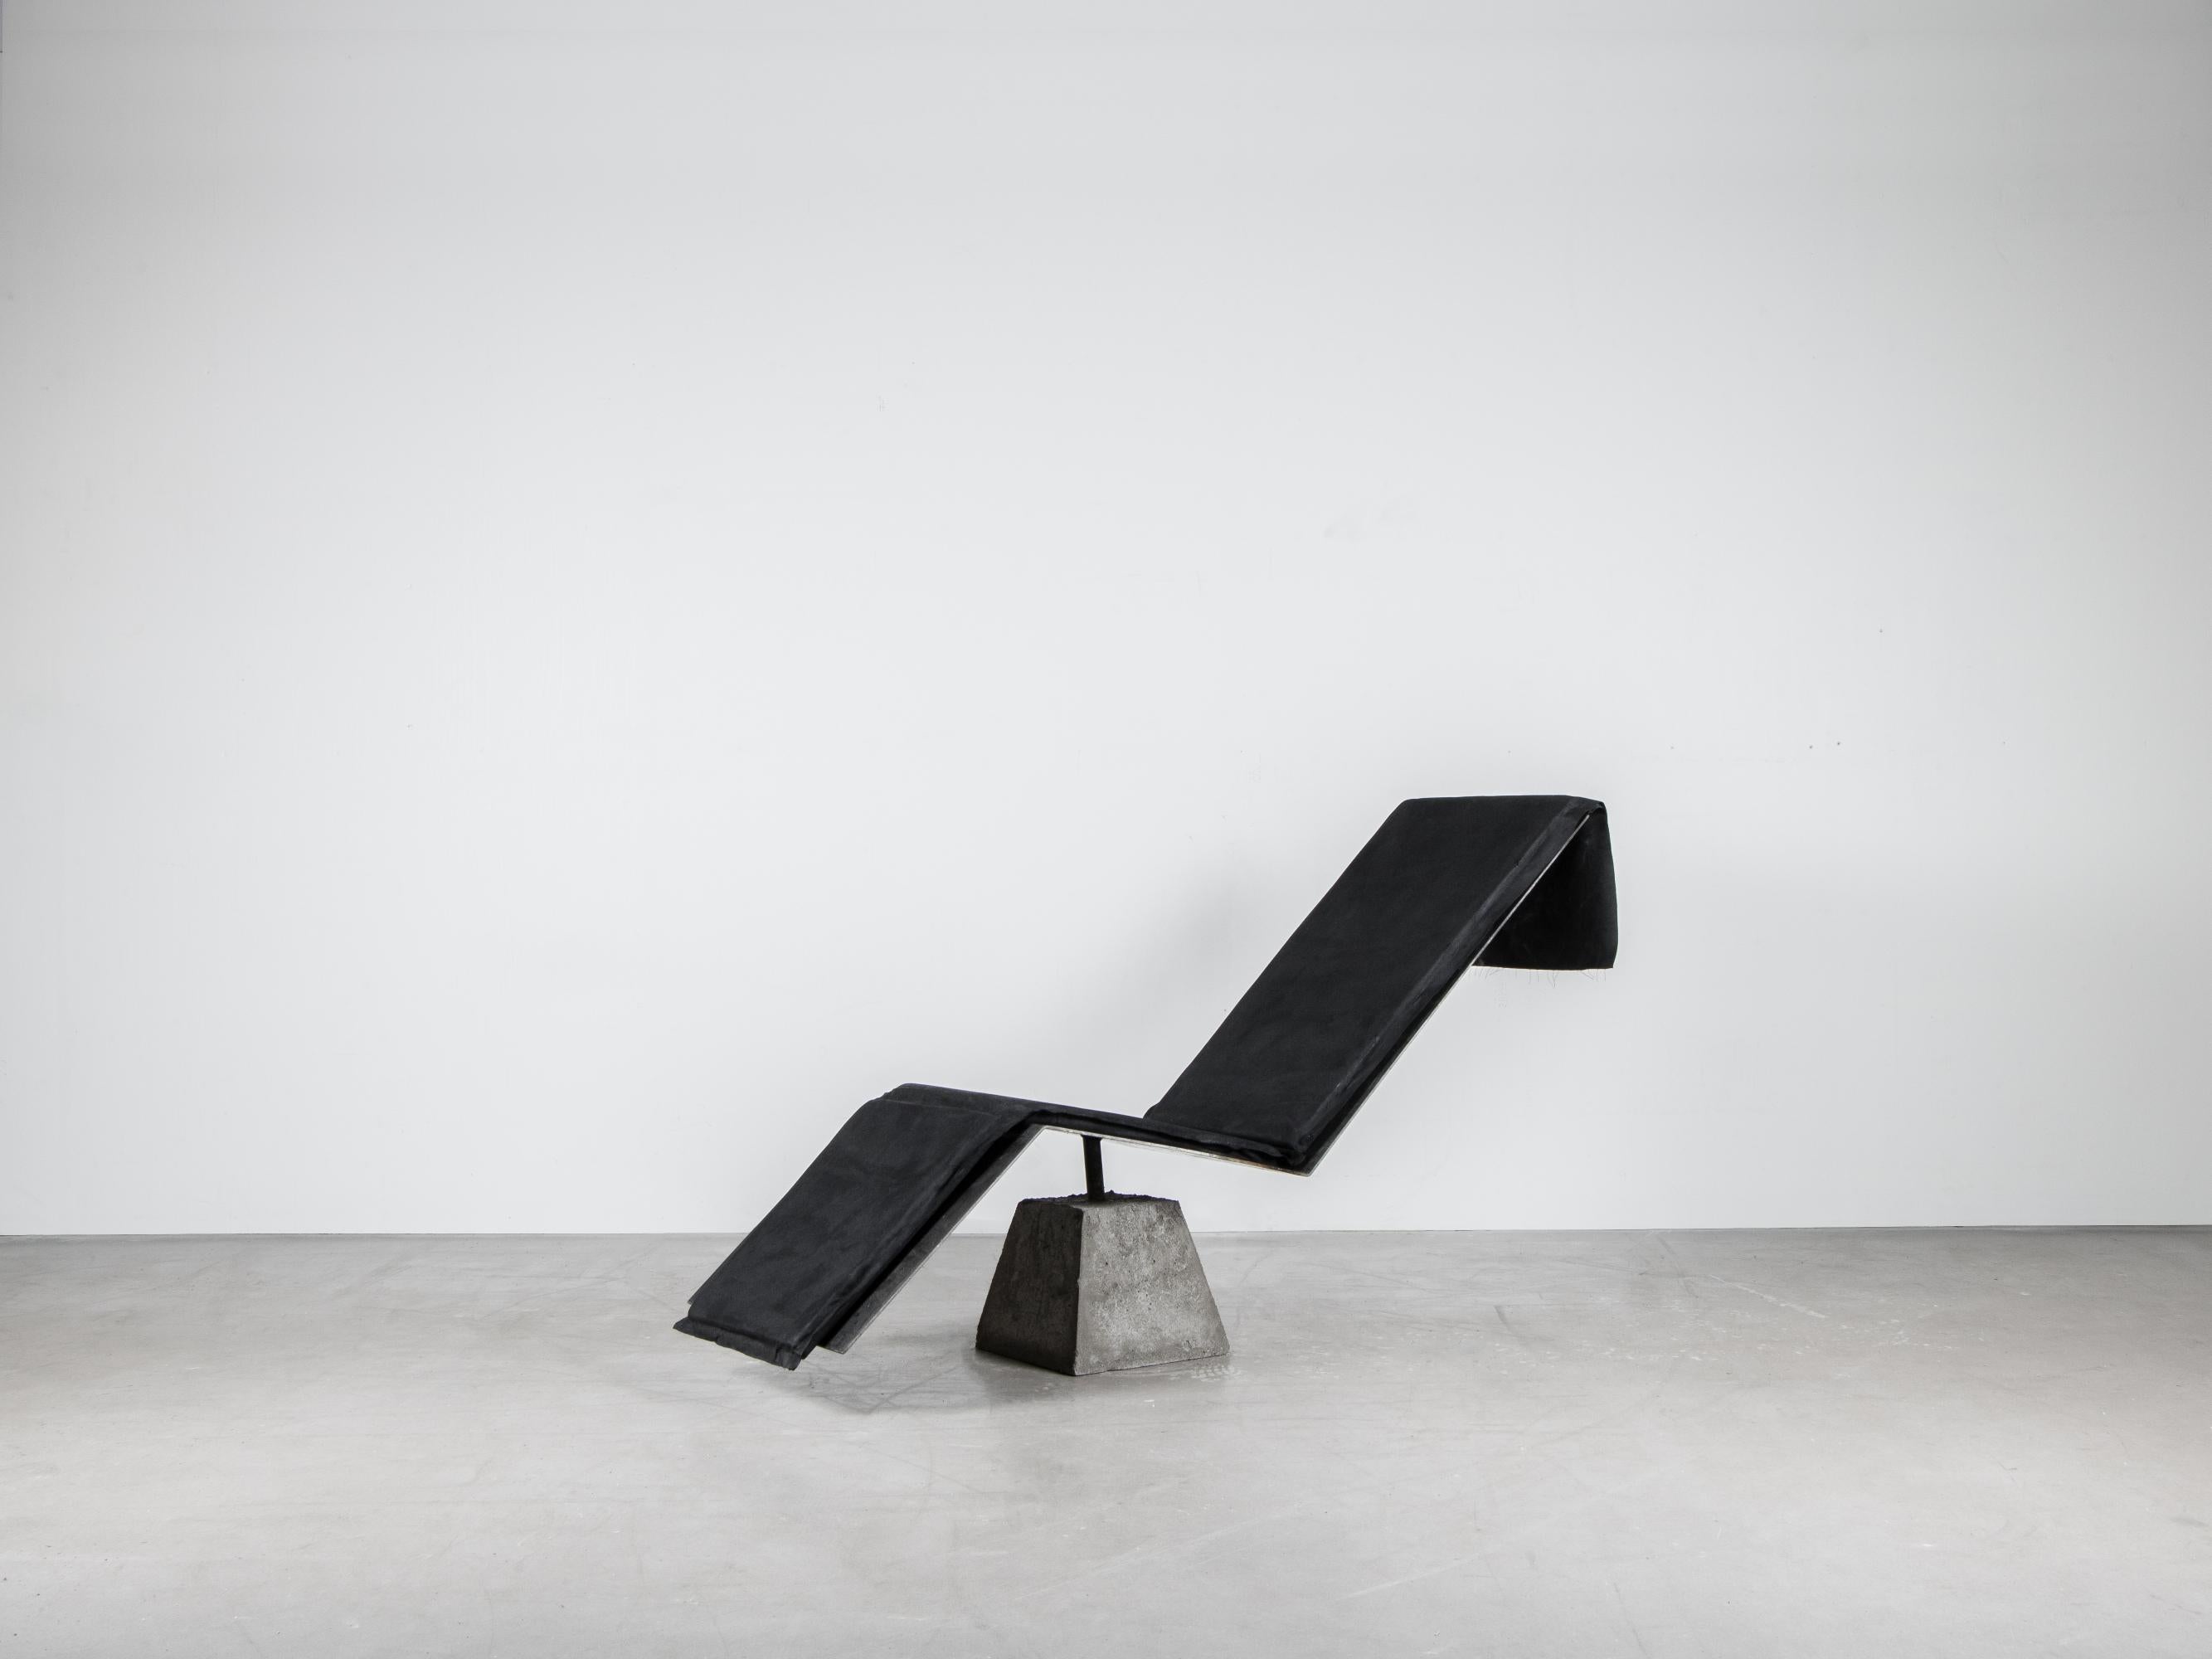 Flykt-Stuhl von Lucas Tyra Morten
2020
Limitierte Auflage von 17 Stück
Abmessungen: 150 H, 83 B 50 cm
MATERIAL: Beton, gebrannter gewachster Stahl und handgewachstes Polsterkissen

Mit der Vision, ein Monument für den Eskapismus zu bauen, wurde der